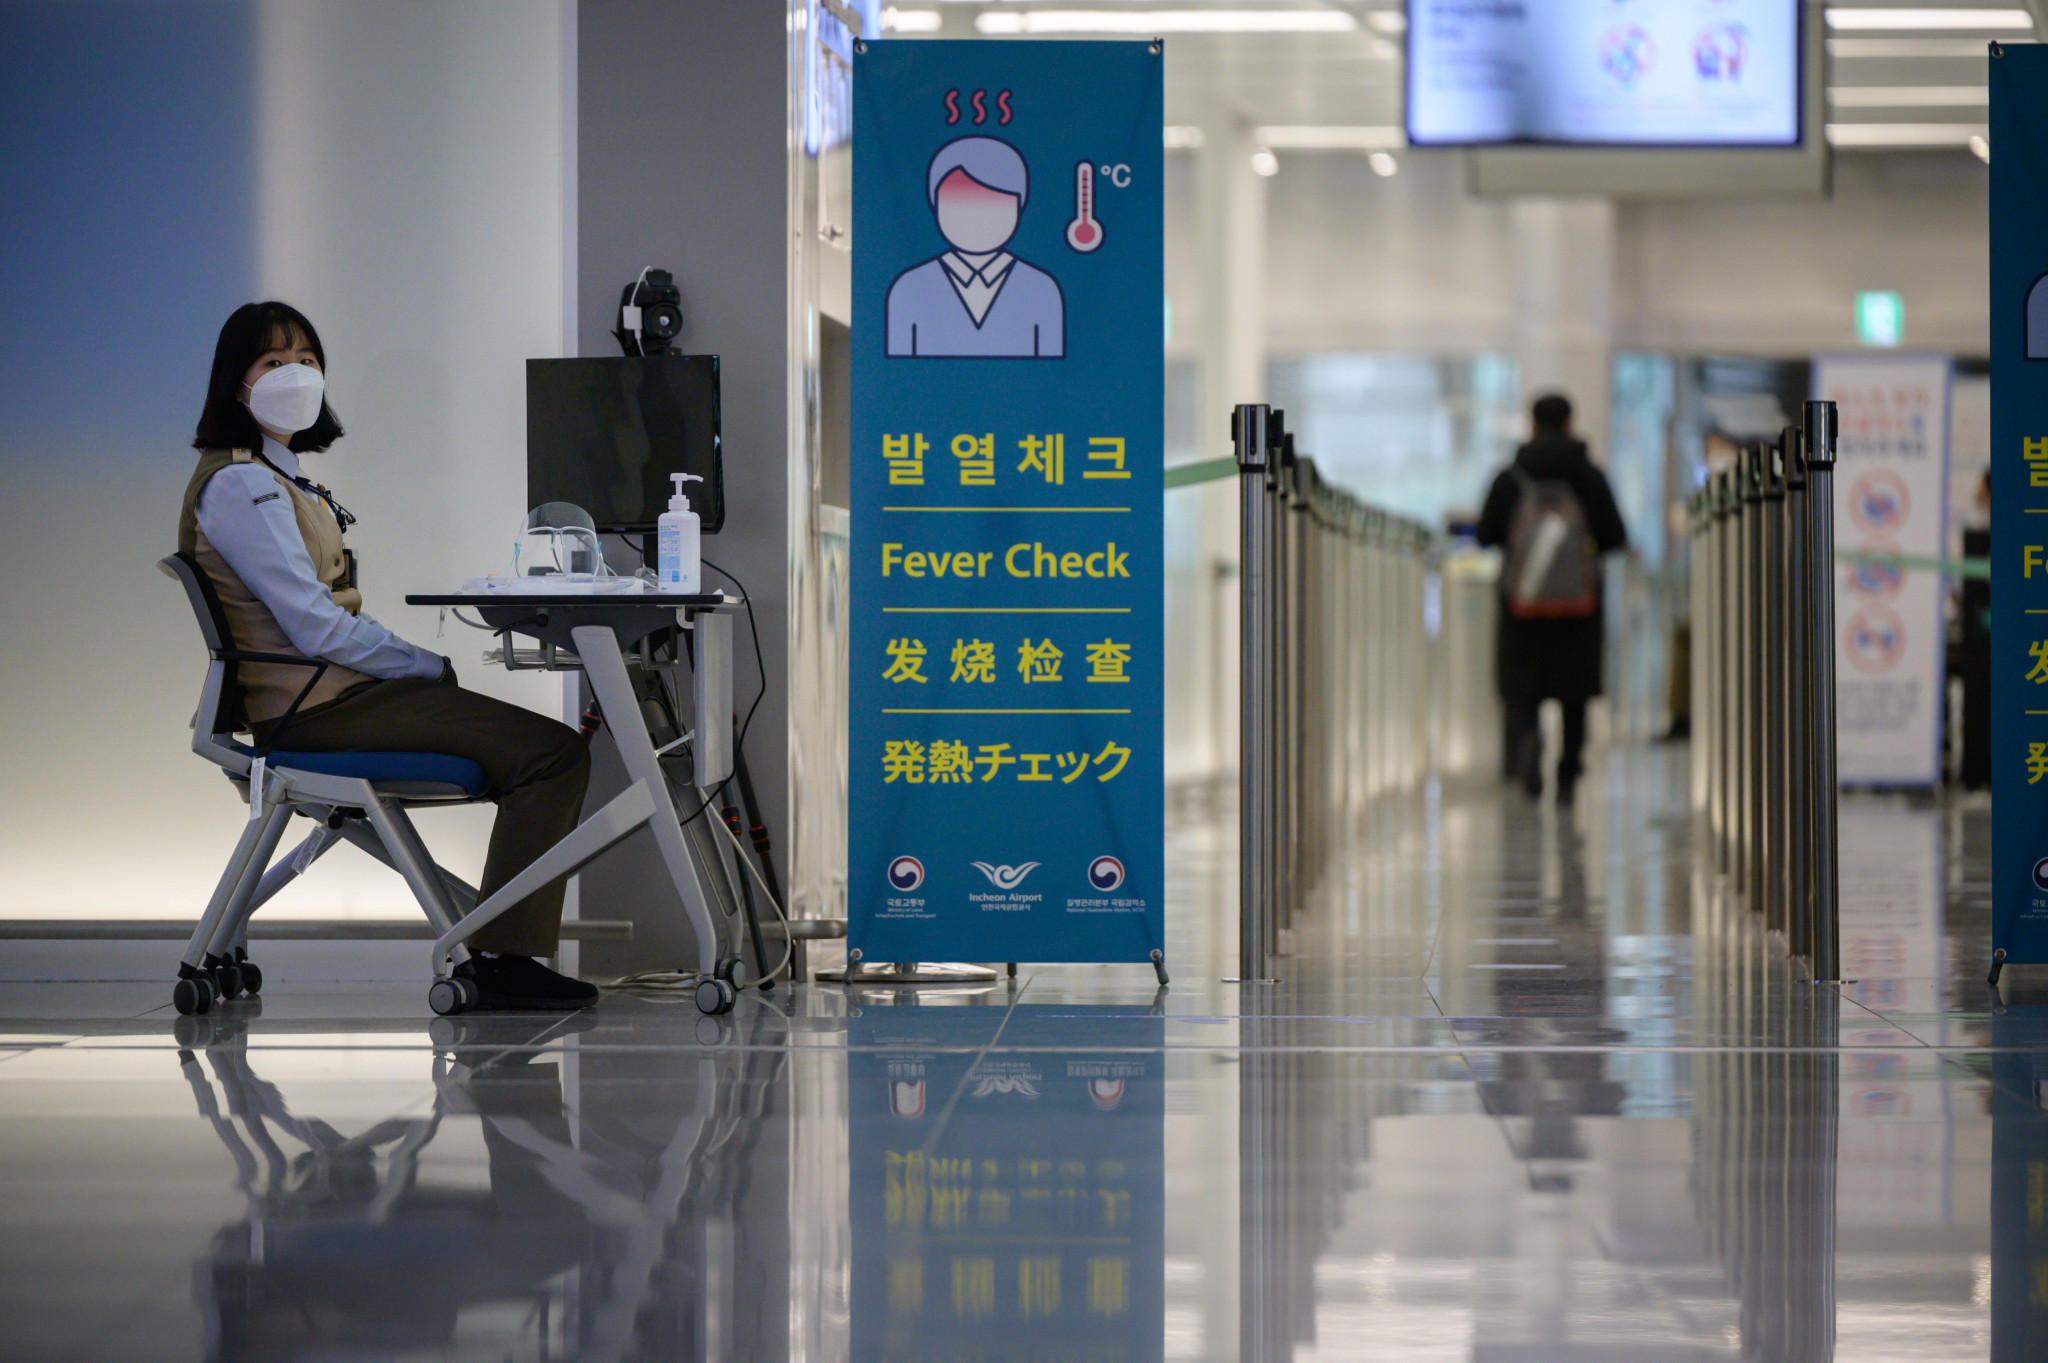 Les restrictions d'entrée liées au coronavirus ont conduit l'UIPM à déplacer la finale de la Coupe du monde de pentathlon loin de la Corée du Sud © Getty Images